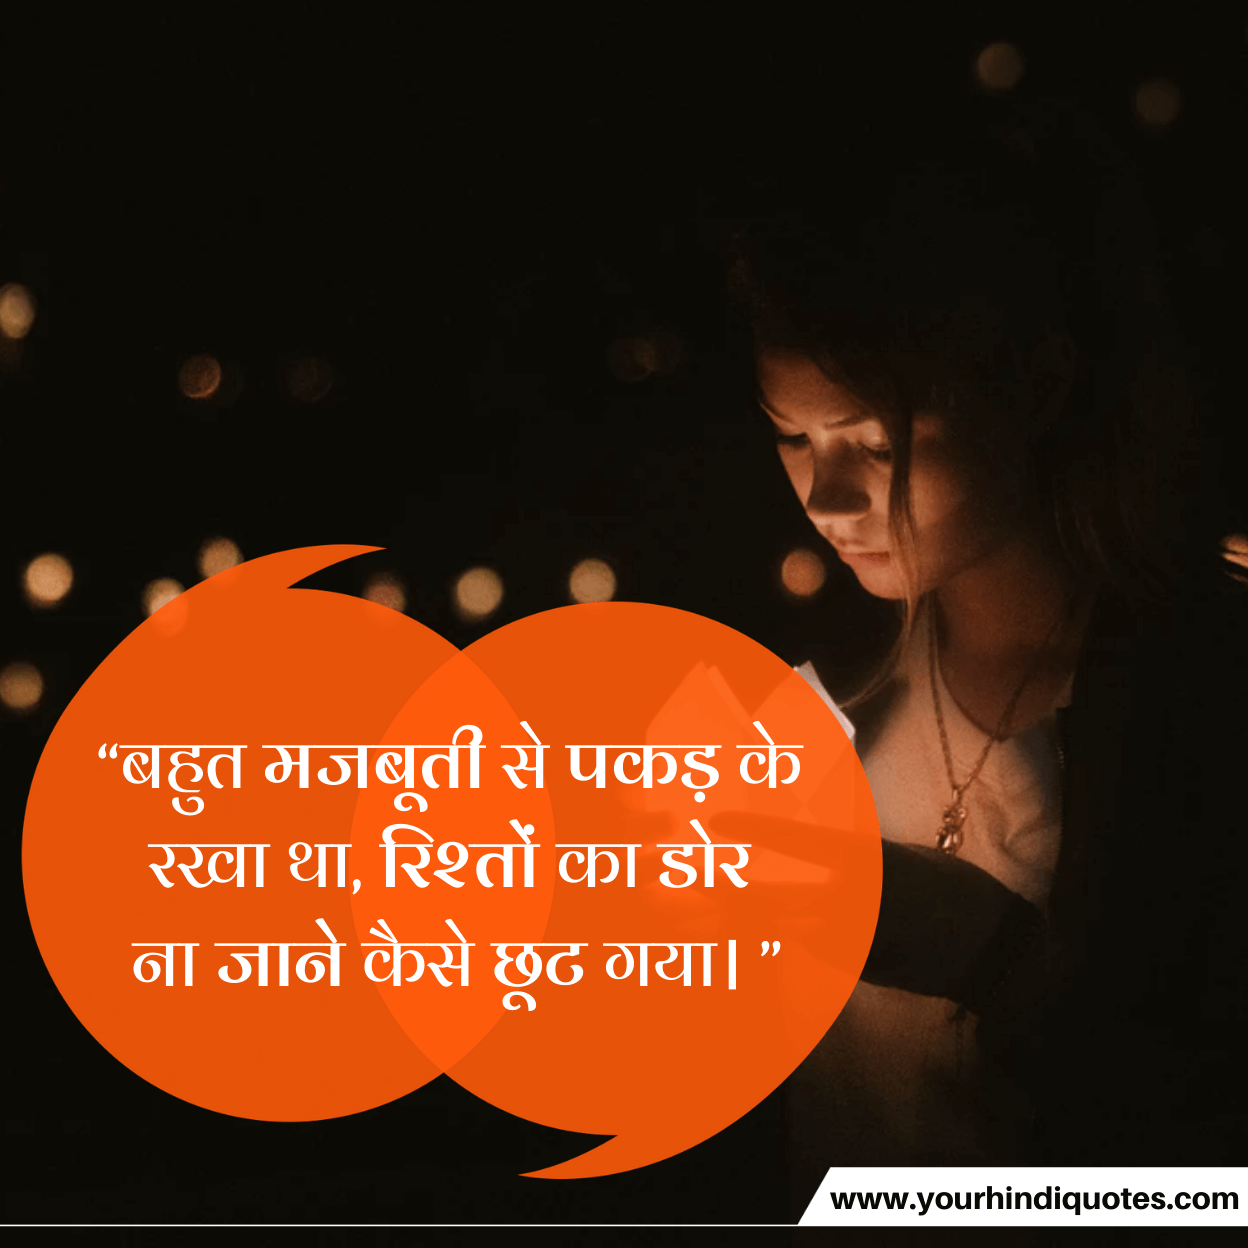 Emotional Hindi quotes photos